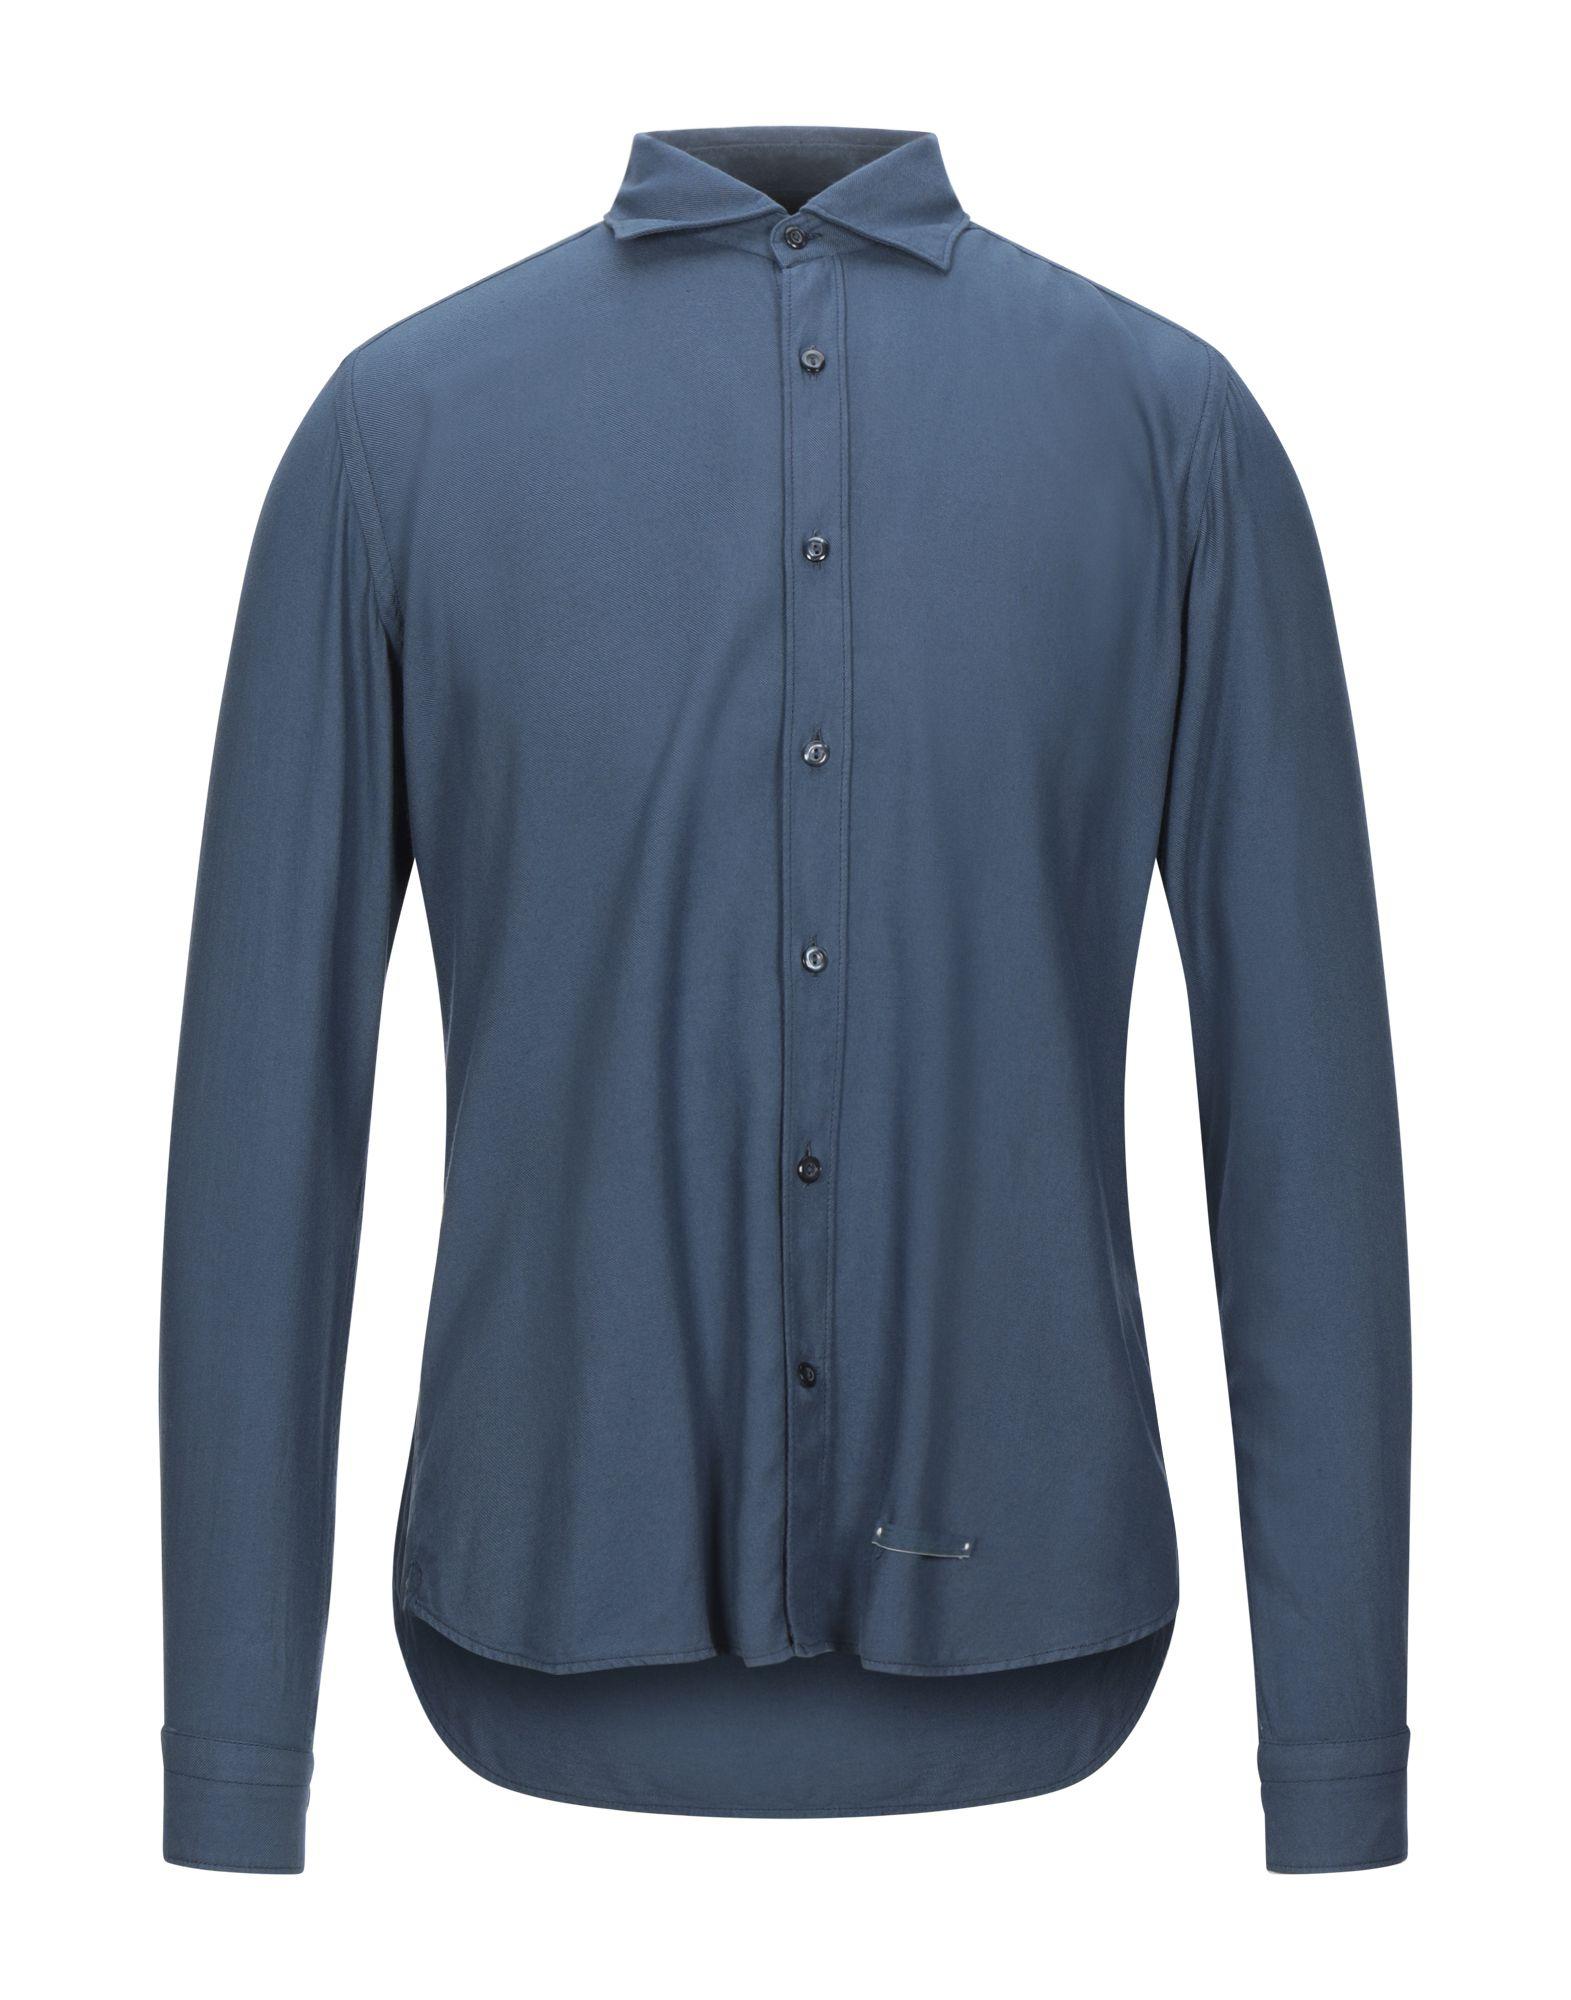 Tintoria Mattei 954 Cotton Shirt in Slate Blue (Blue) for Men - Lyst